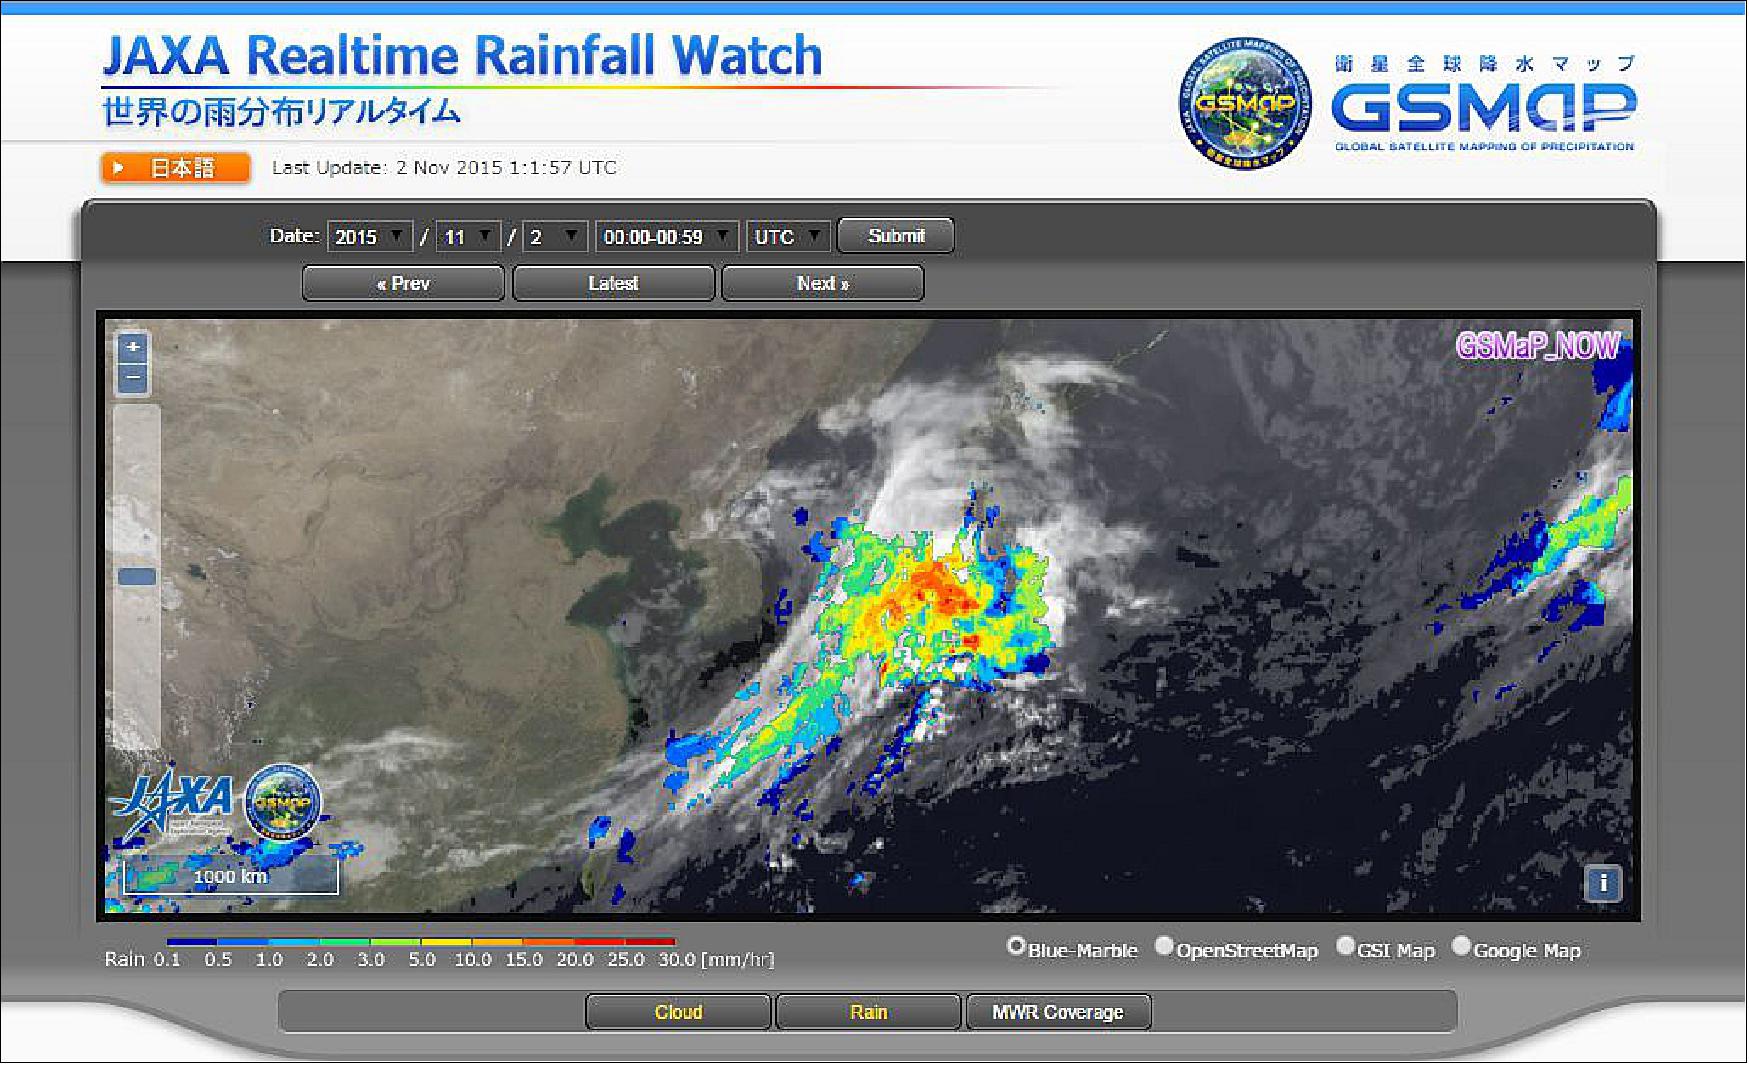 Figure 15: Example image of the web site "JAXA Realtime Rainfall Watch" (image credit: JAXA/EORC)